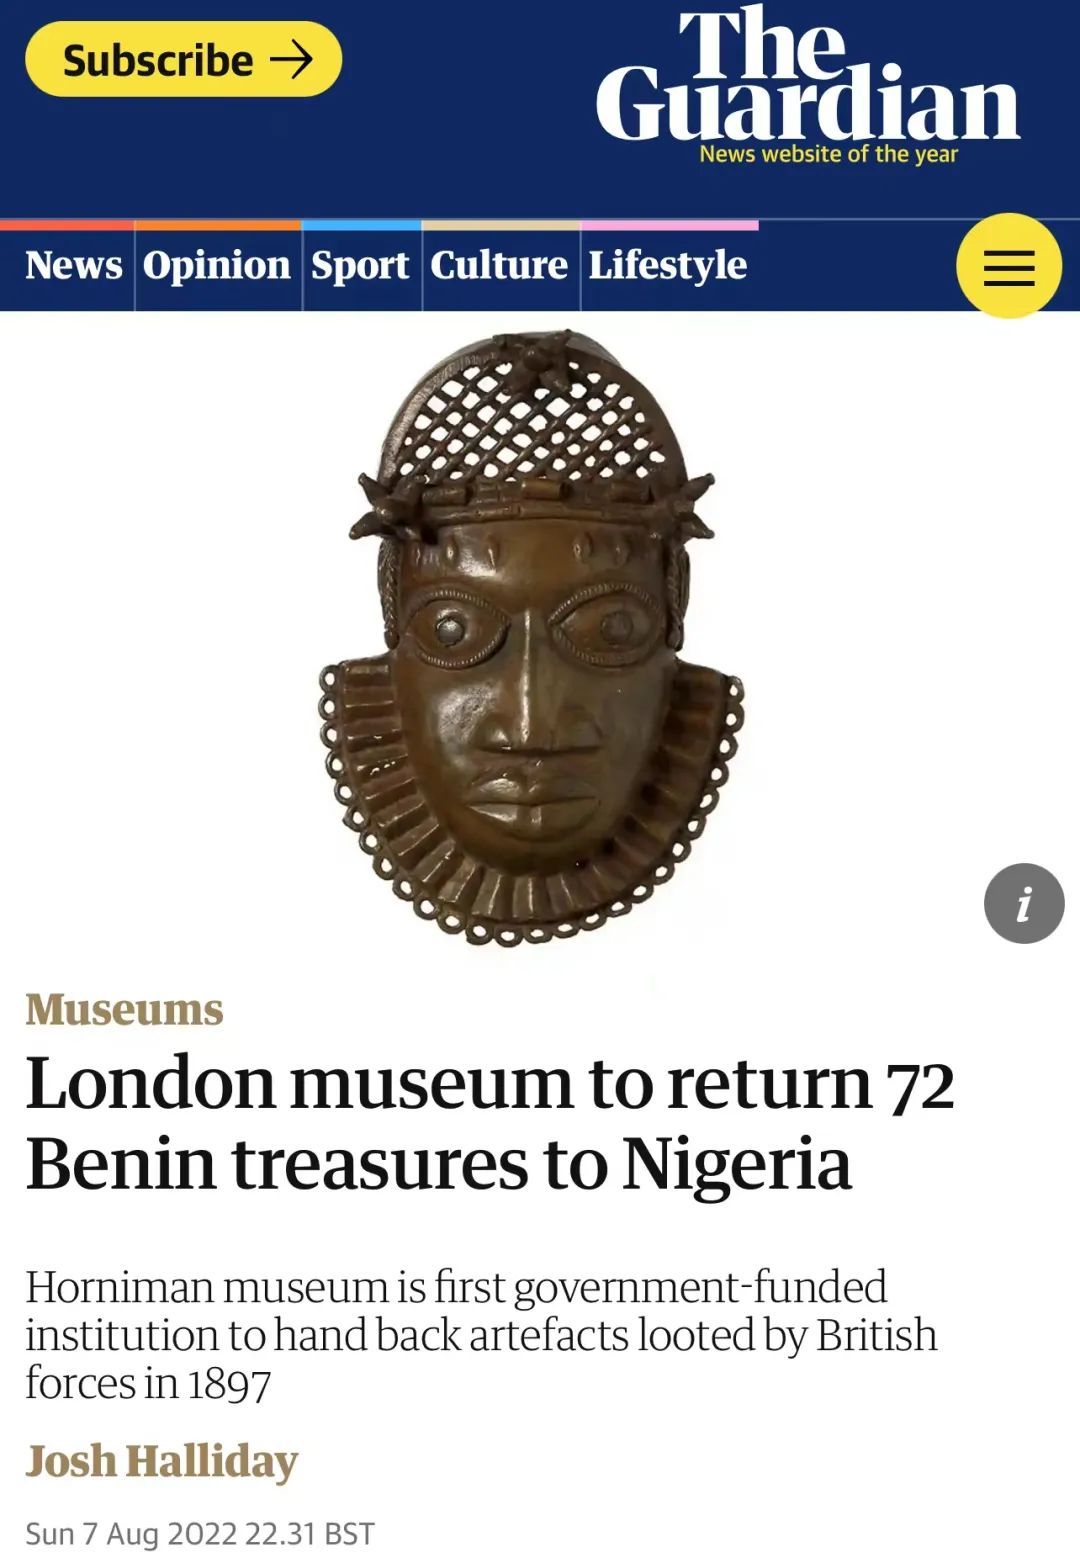 英国将向尼日利亚归还72件珍贵文物